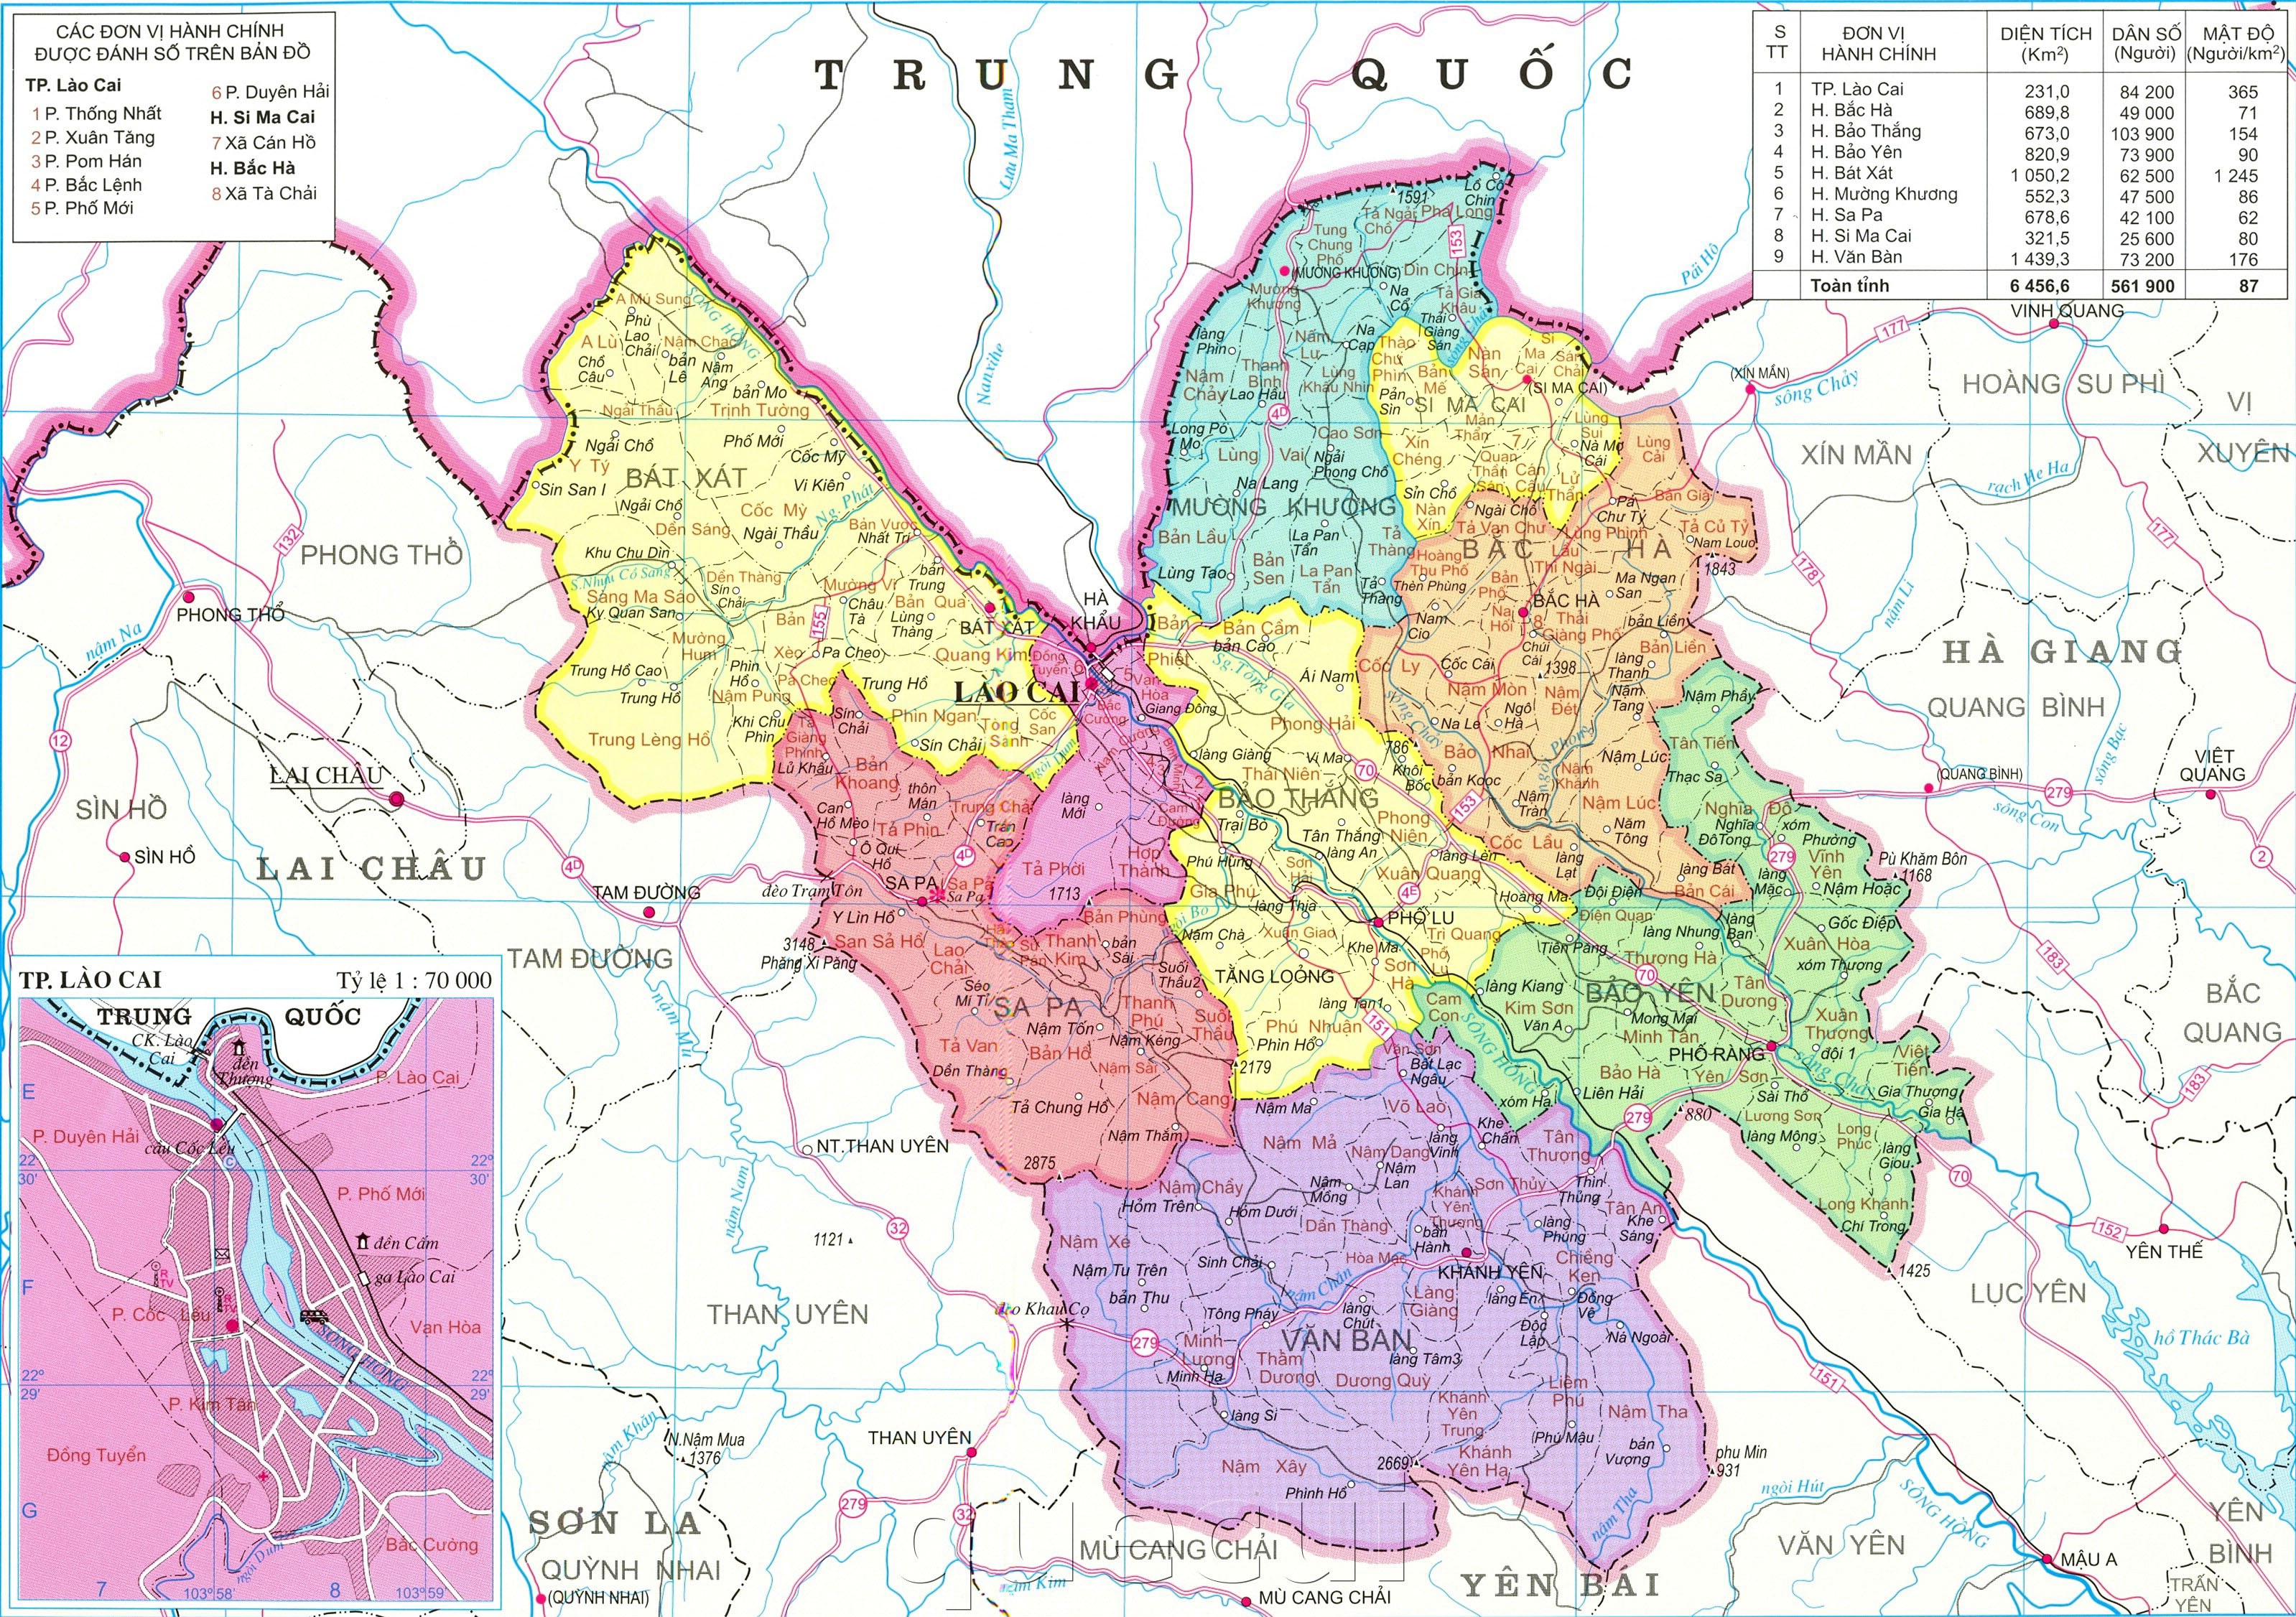 Sắp tới năm 2024, Bản đồ hành chính tỉnh Lào Cai sẽ được cập nhật mới nhất, giúp người dân và du khách dễ dàng tiếp cận và tìm hiểu về các địa danh, thông tin hành chính của tỉnh. Hãy cùng khám phá sự phát triển của Lào Cai qua bản đồ mới nhé!